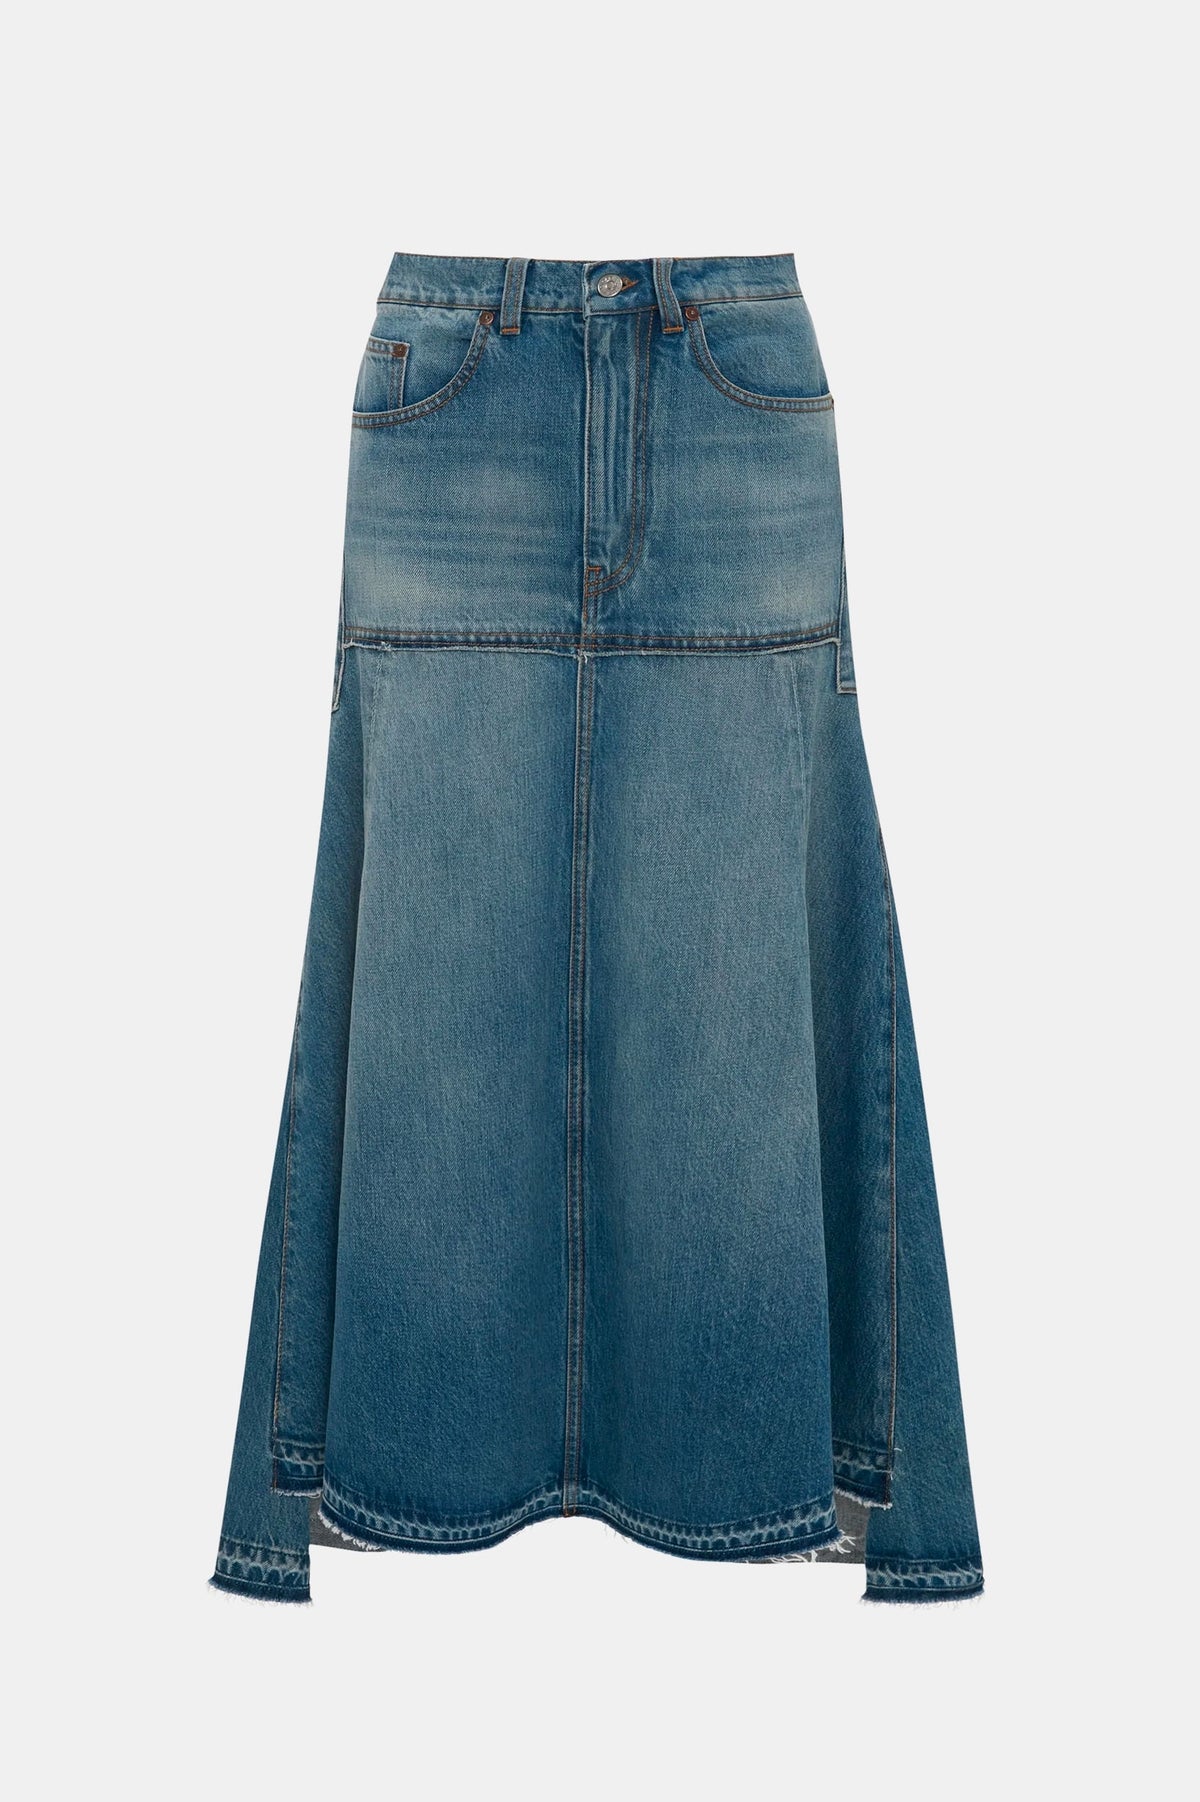 Patched Denim Skirt in Vintage Wash